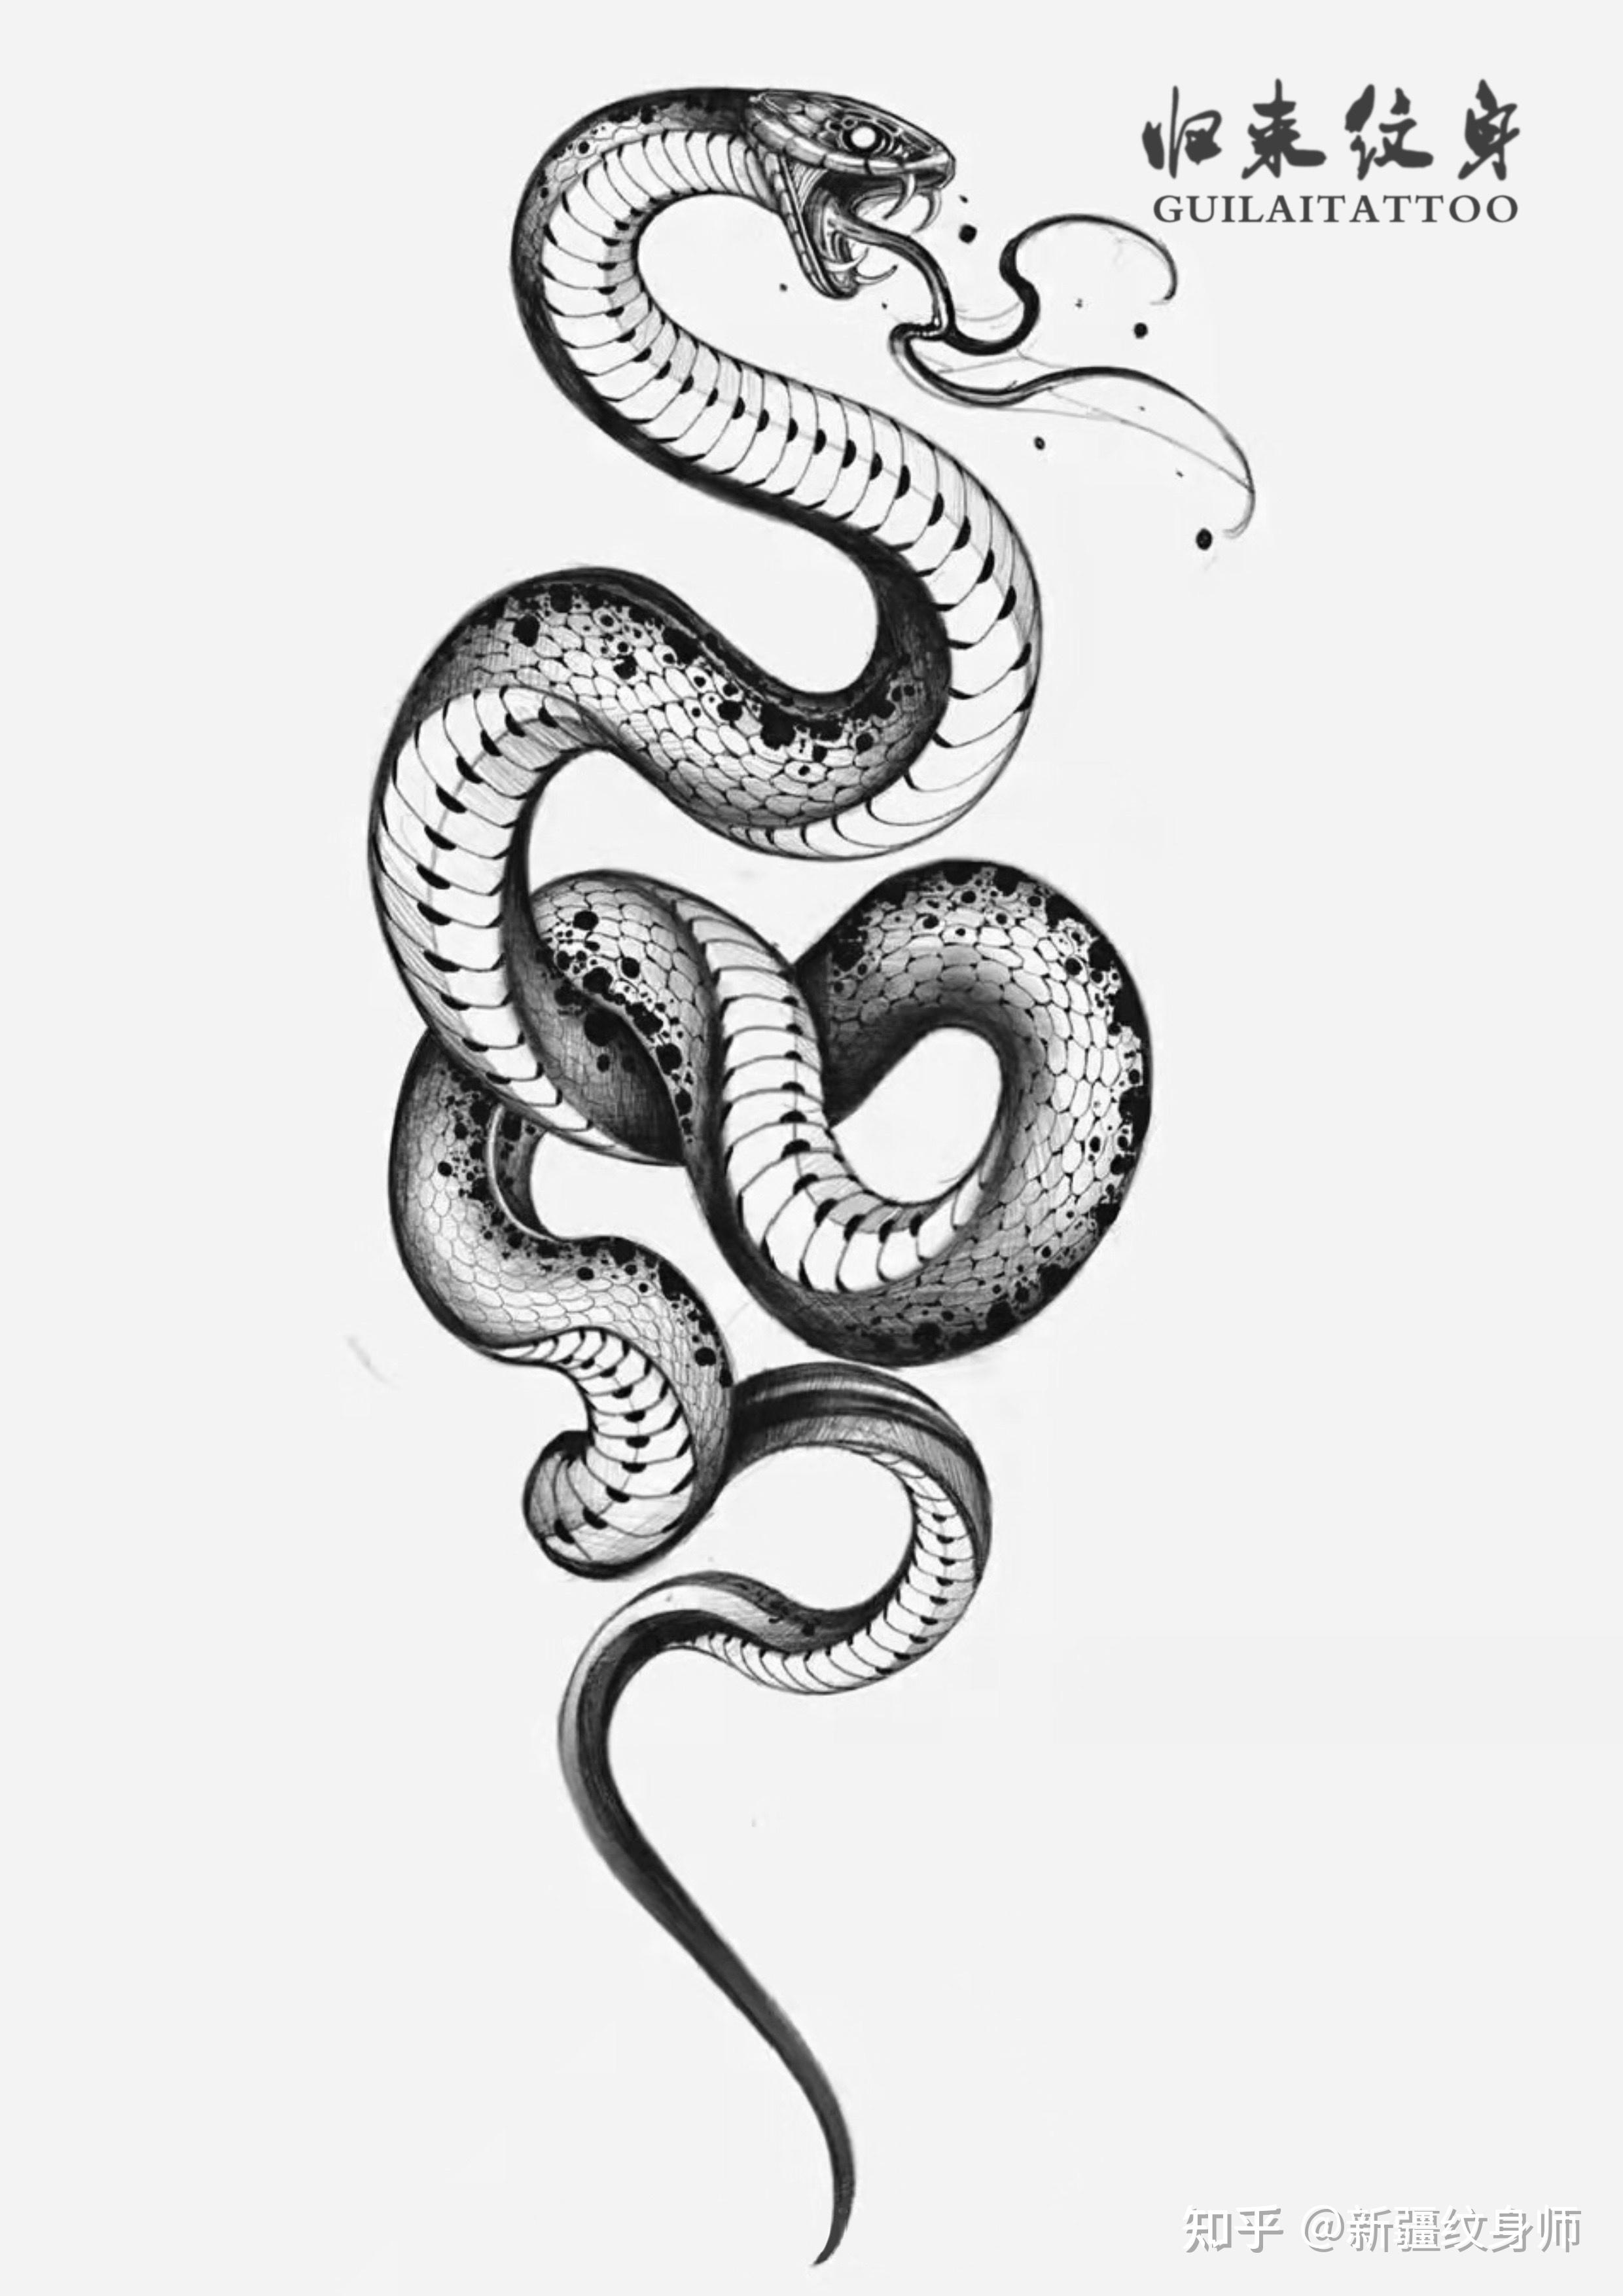 眼镜蛇纹身设计 矢量插图装饰设计 向量例证. 插画 包括有 模式, 艺术, 纹身花刺, 设计, 眼镜蛇 - 189068310